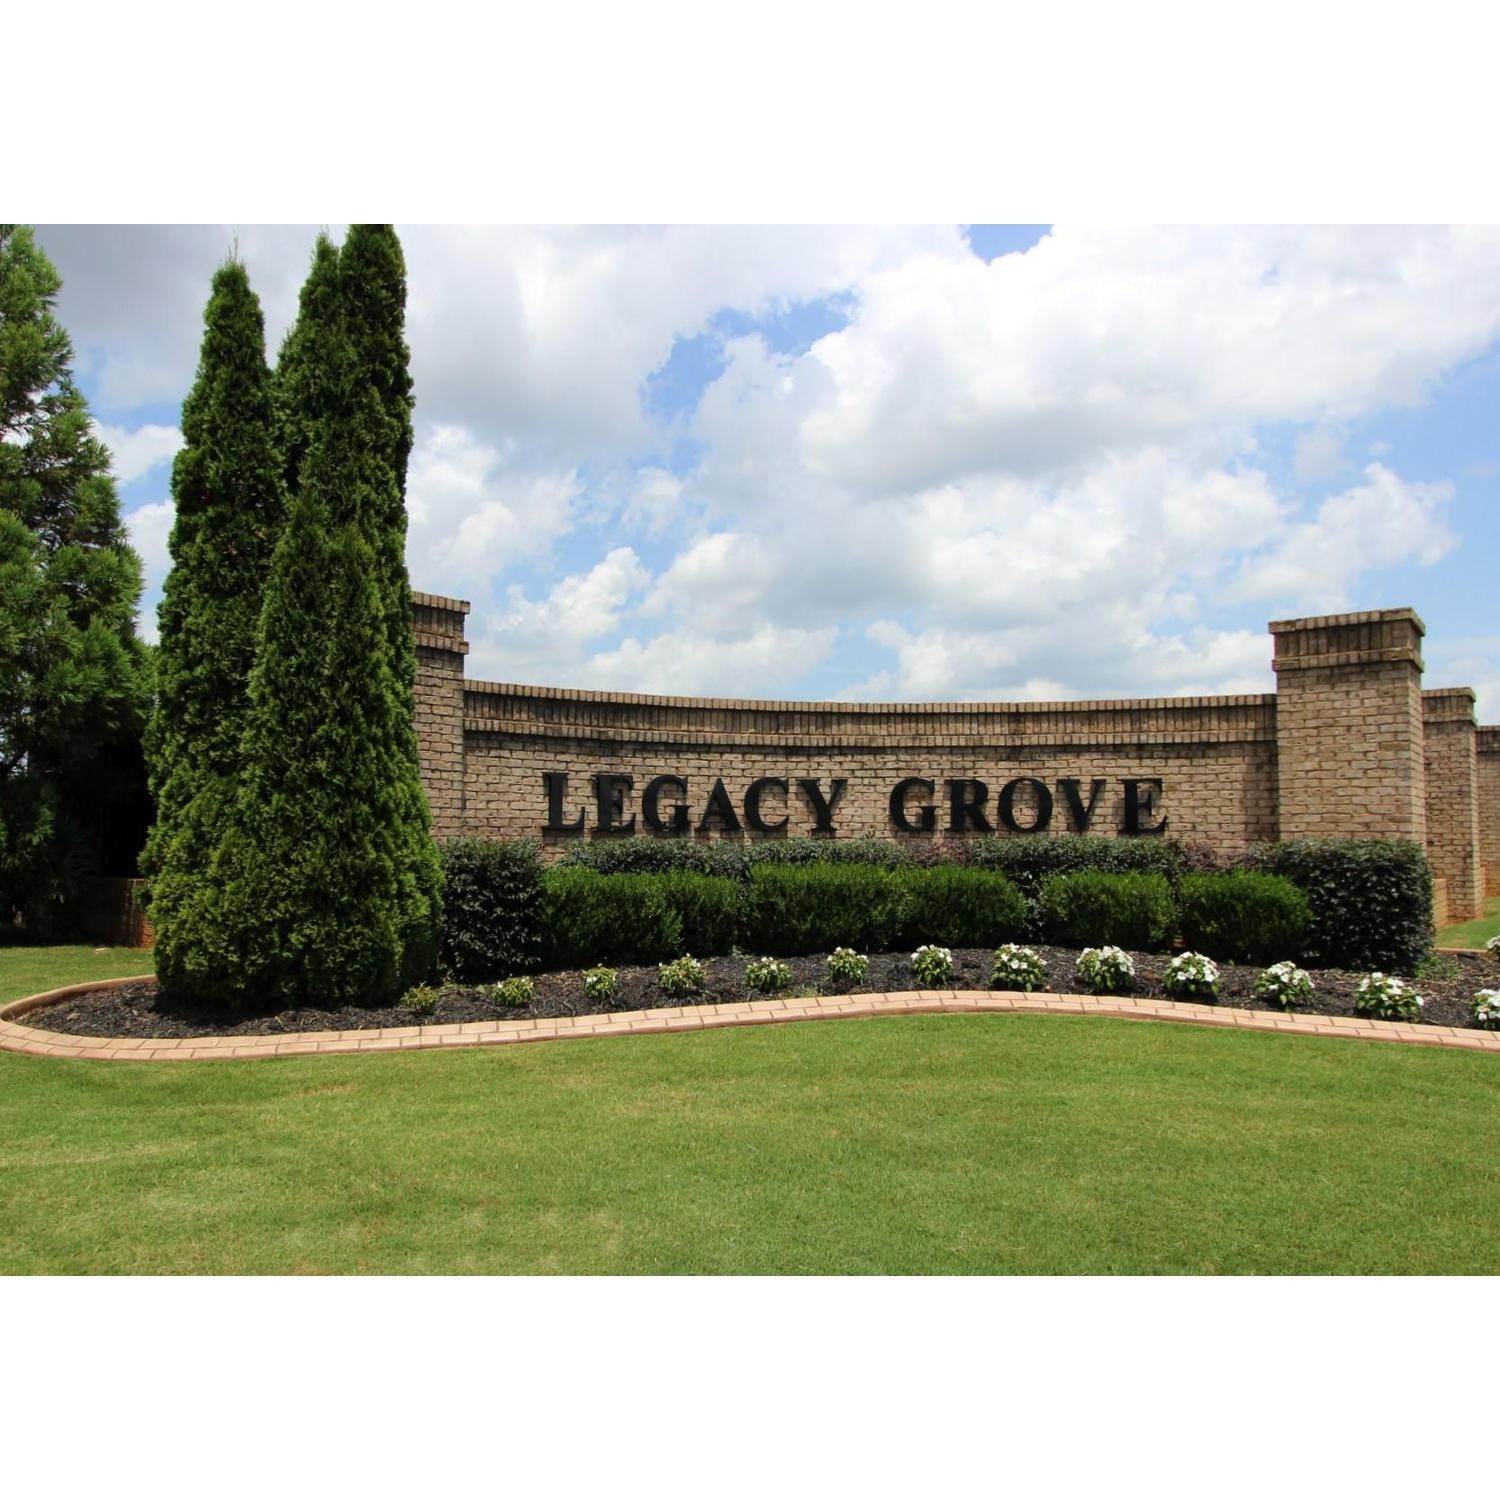 15. Legacy Grove edificio a 25643 Grayson Lndg, Madison, AL 35756